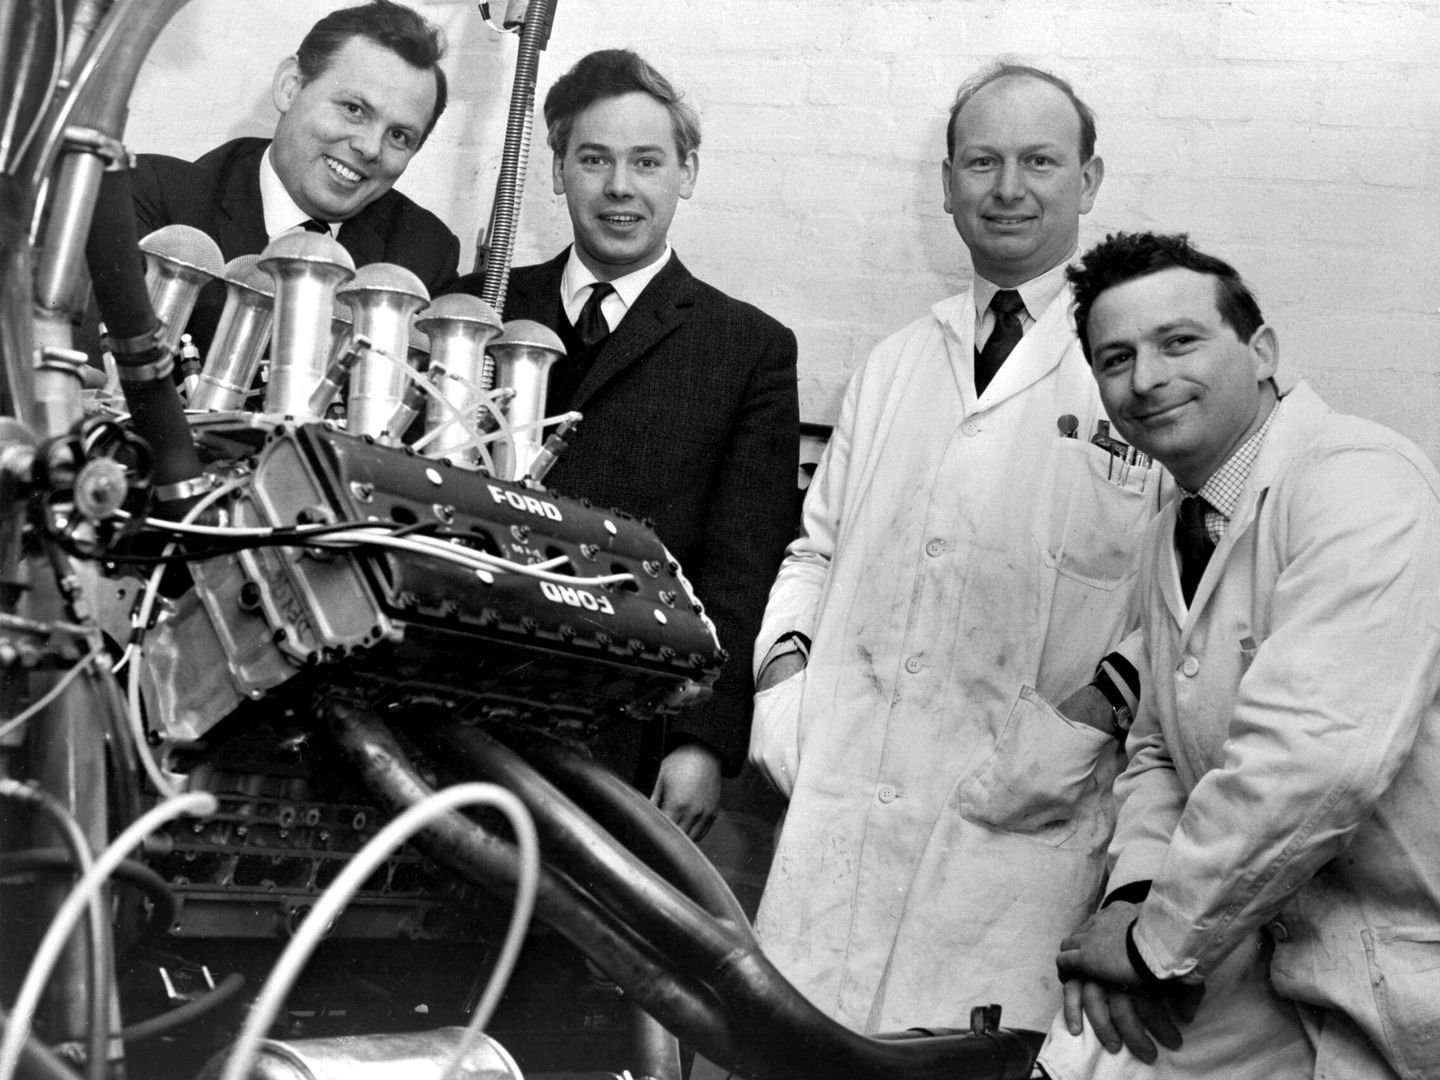 En el centro de la imagen, los fundadores de Cosworth, Keith Duckworth y Mike Costin junto a su obra maestra el motor V8 3.0 DFV (Archivo Ford)